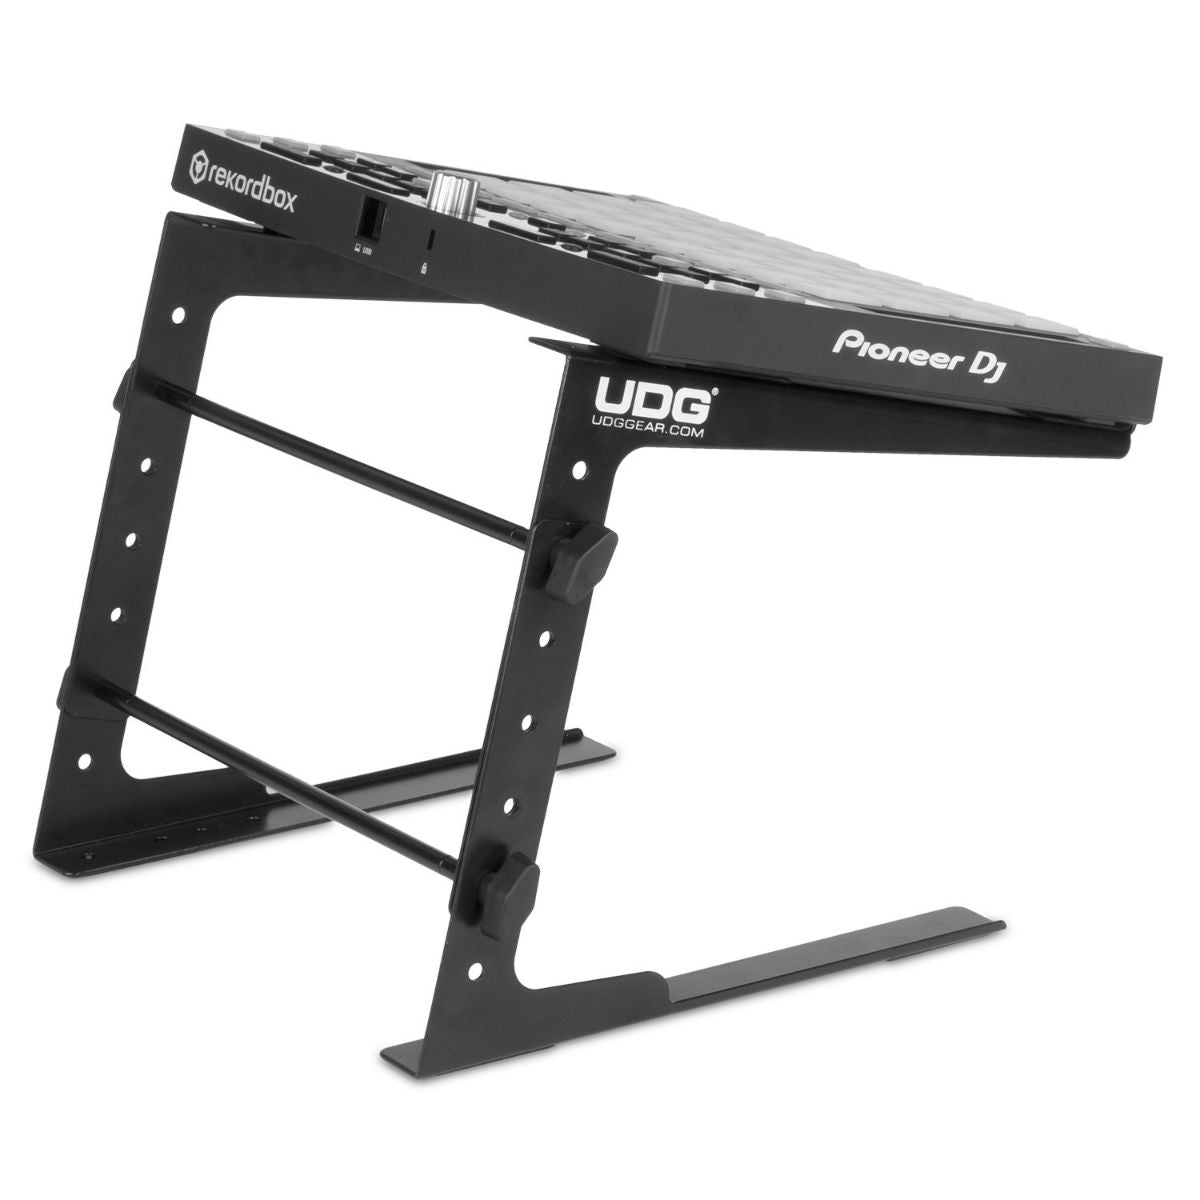 UDG Ultimate Laptop Stand U96110BL